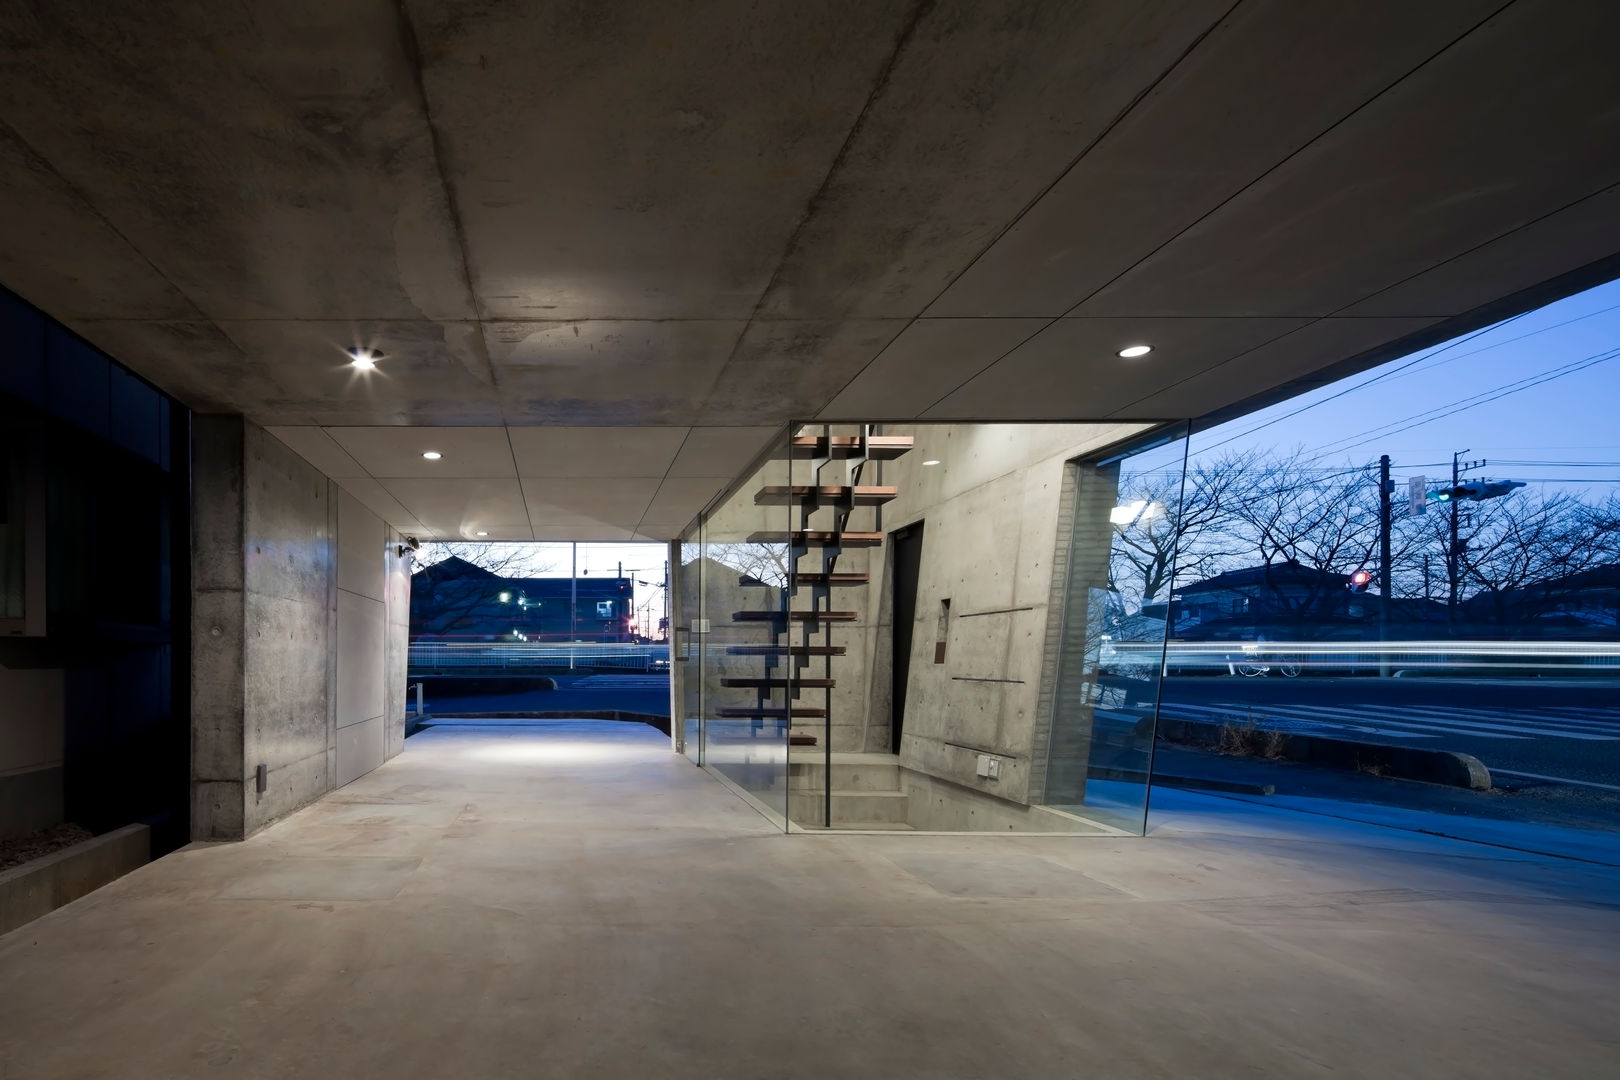 庄司寛建築設計事務所 / HIROSHI SHOJI ARCHITECT&ASSOCIATES의 현대 , 모던